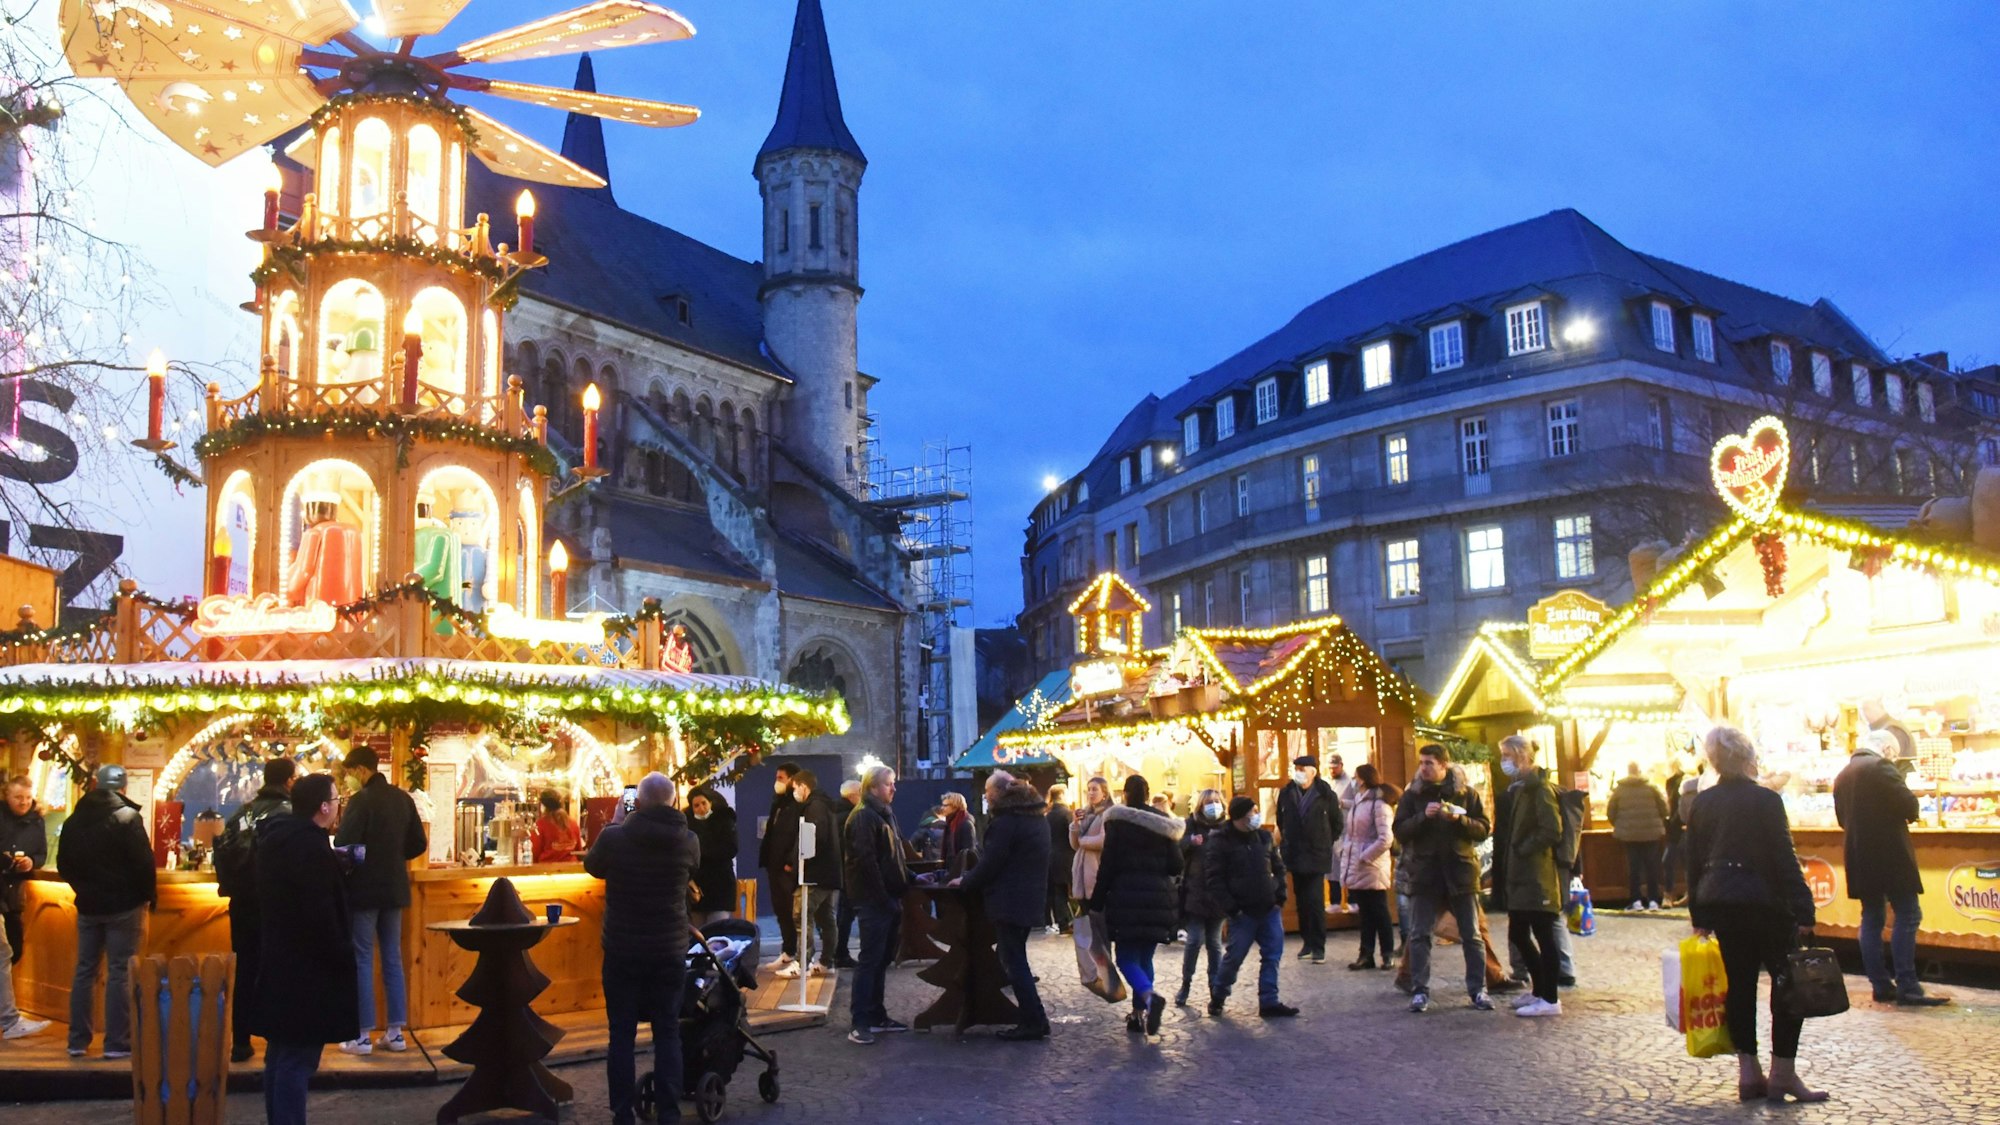 14.12.2021 Bonn.
Fotos aus Bonn und Bonn Bad Godesberg.
Weihnachtsmarkt auf dem Münsterplatz.